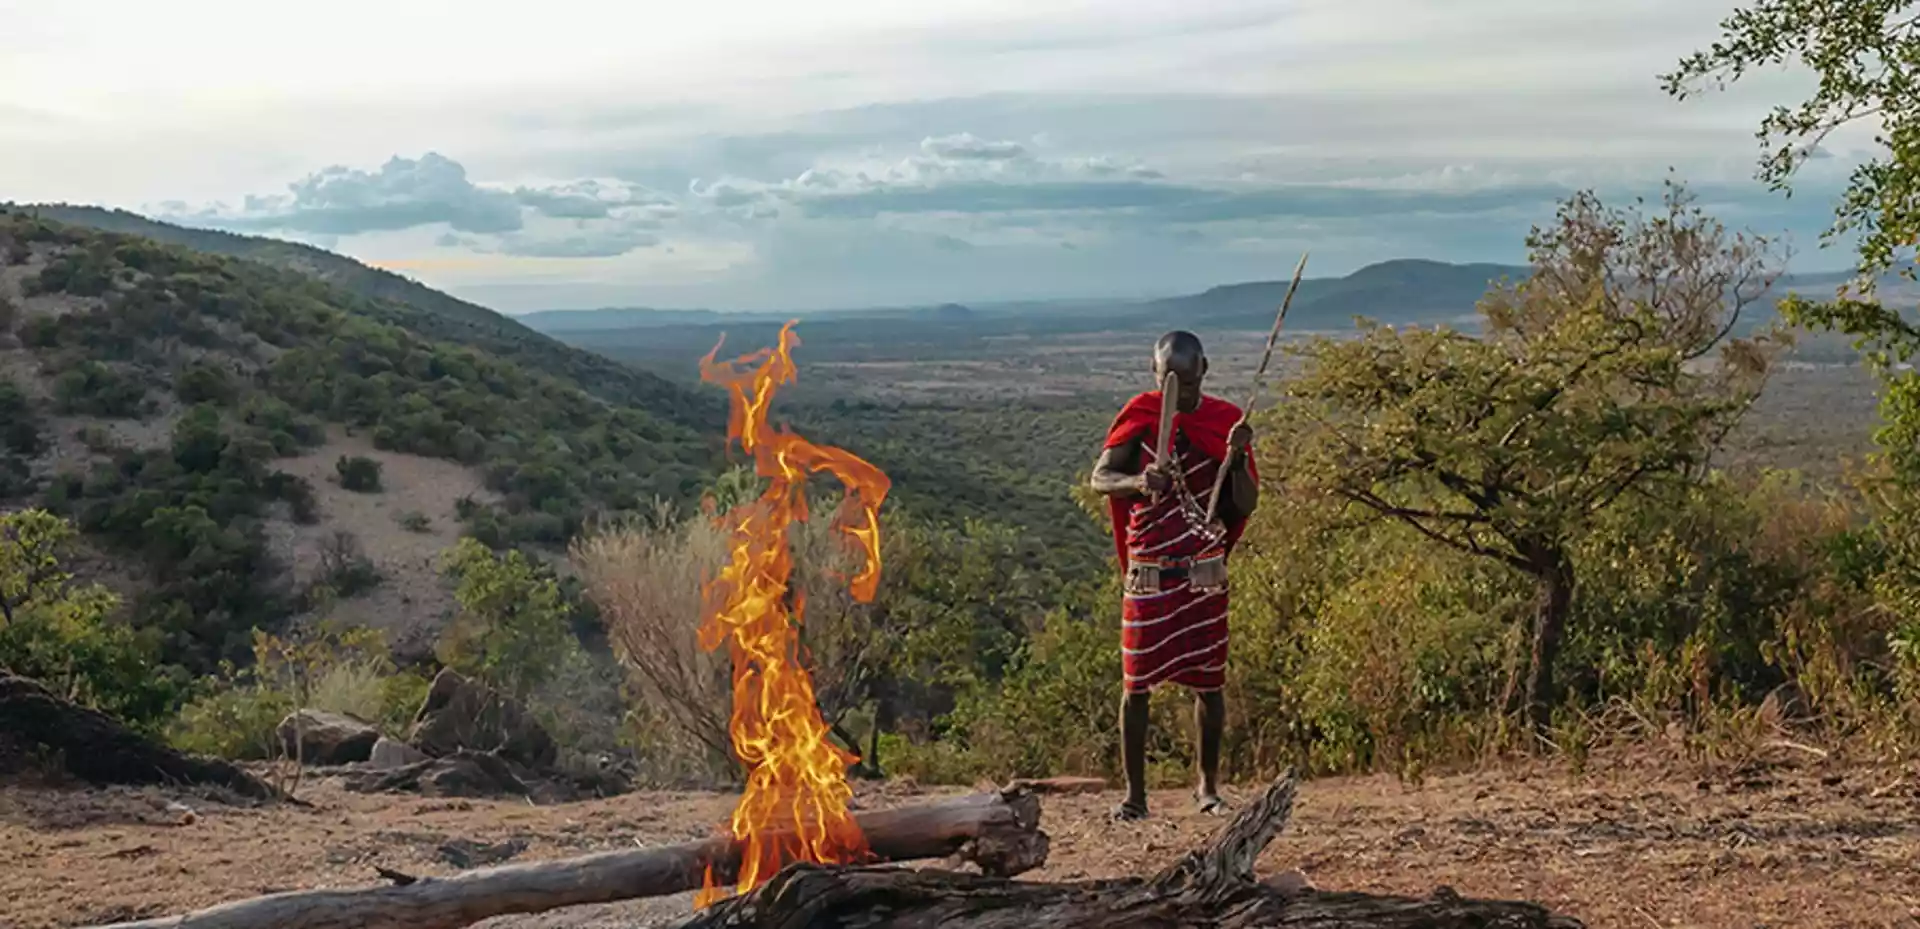 En man fra Masai stammen gjør klar en bål i på et lite fjell omgitt av afrikansk natur.